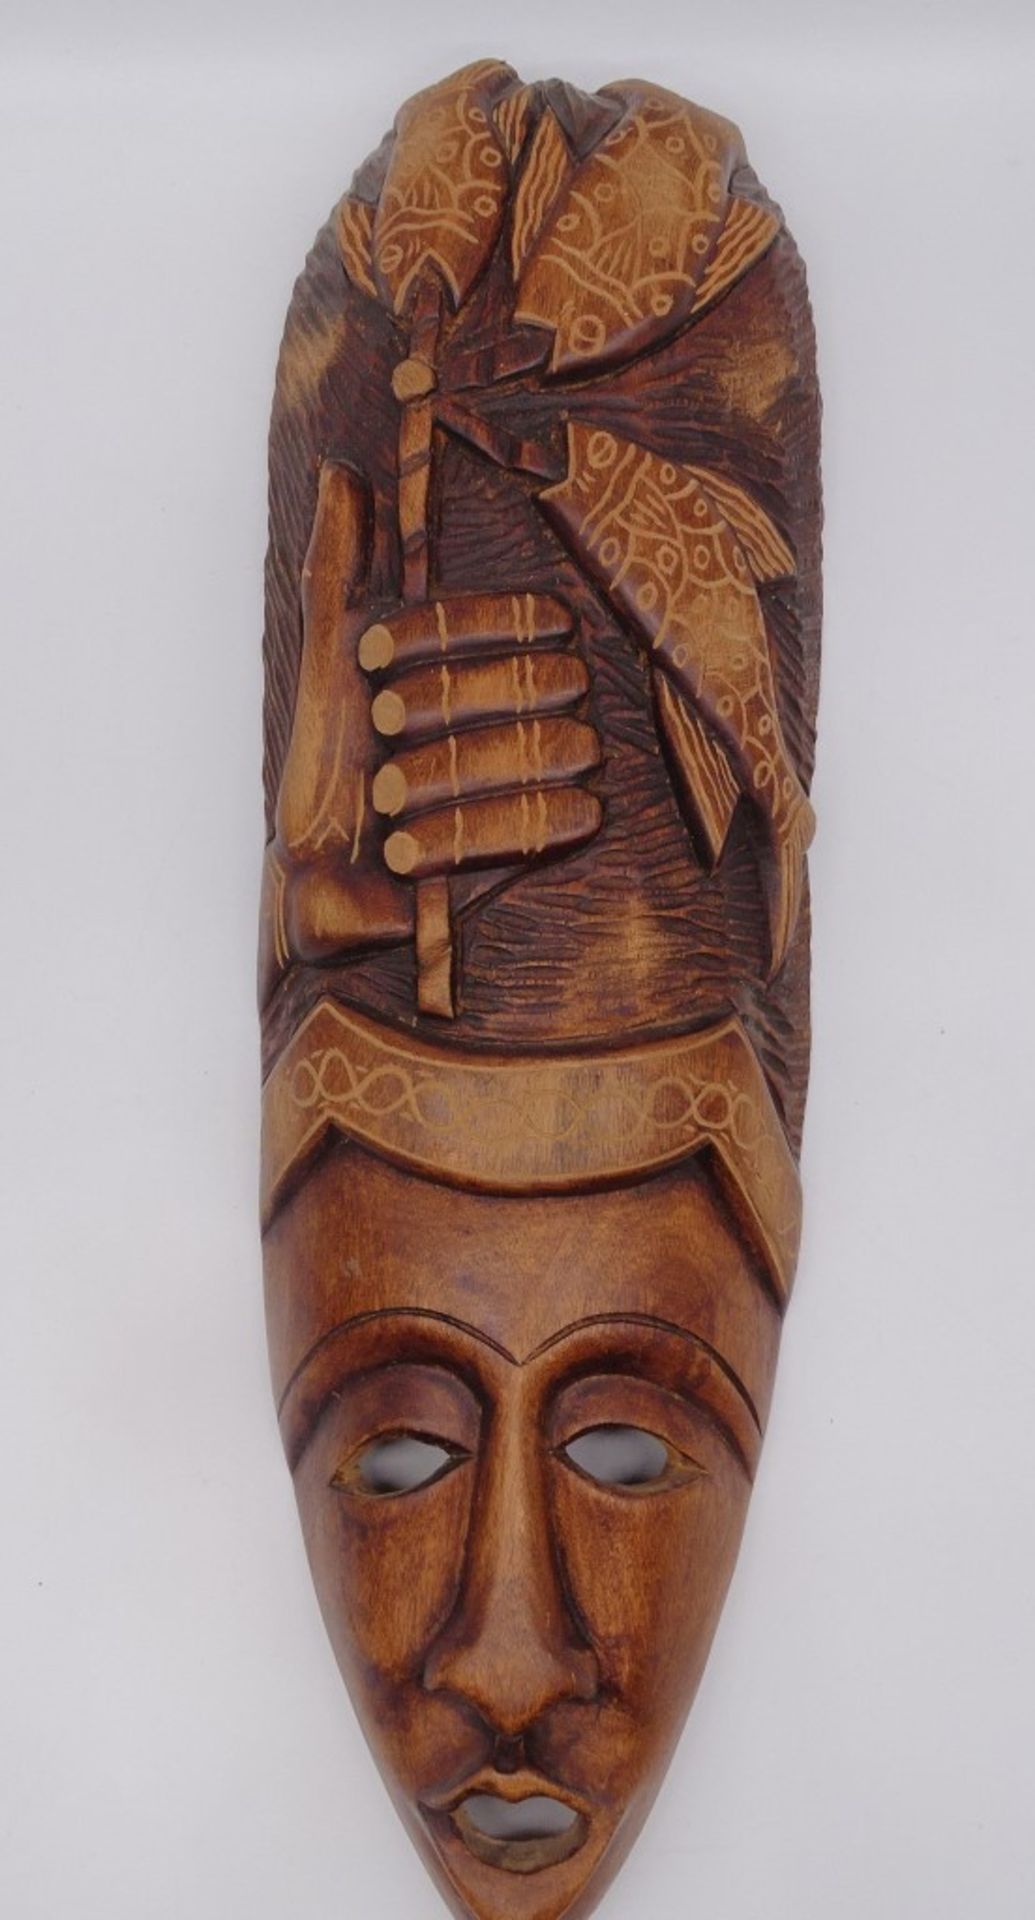 2 Holzmasken, Afrika?, L. 60 cm - Bild 2 aus 9